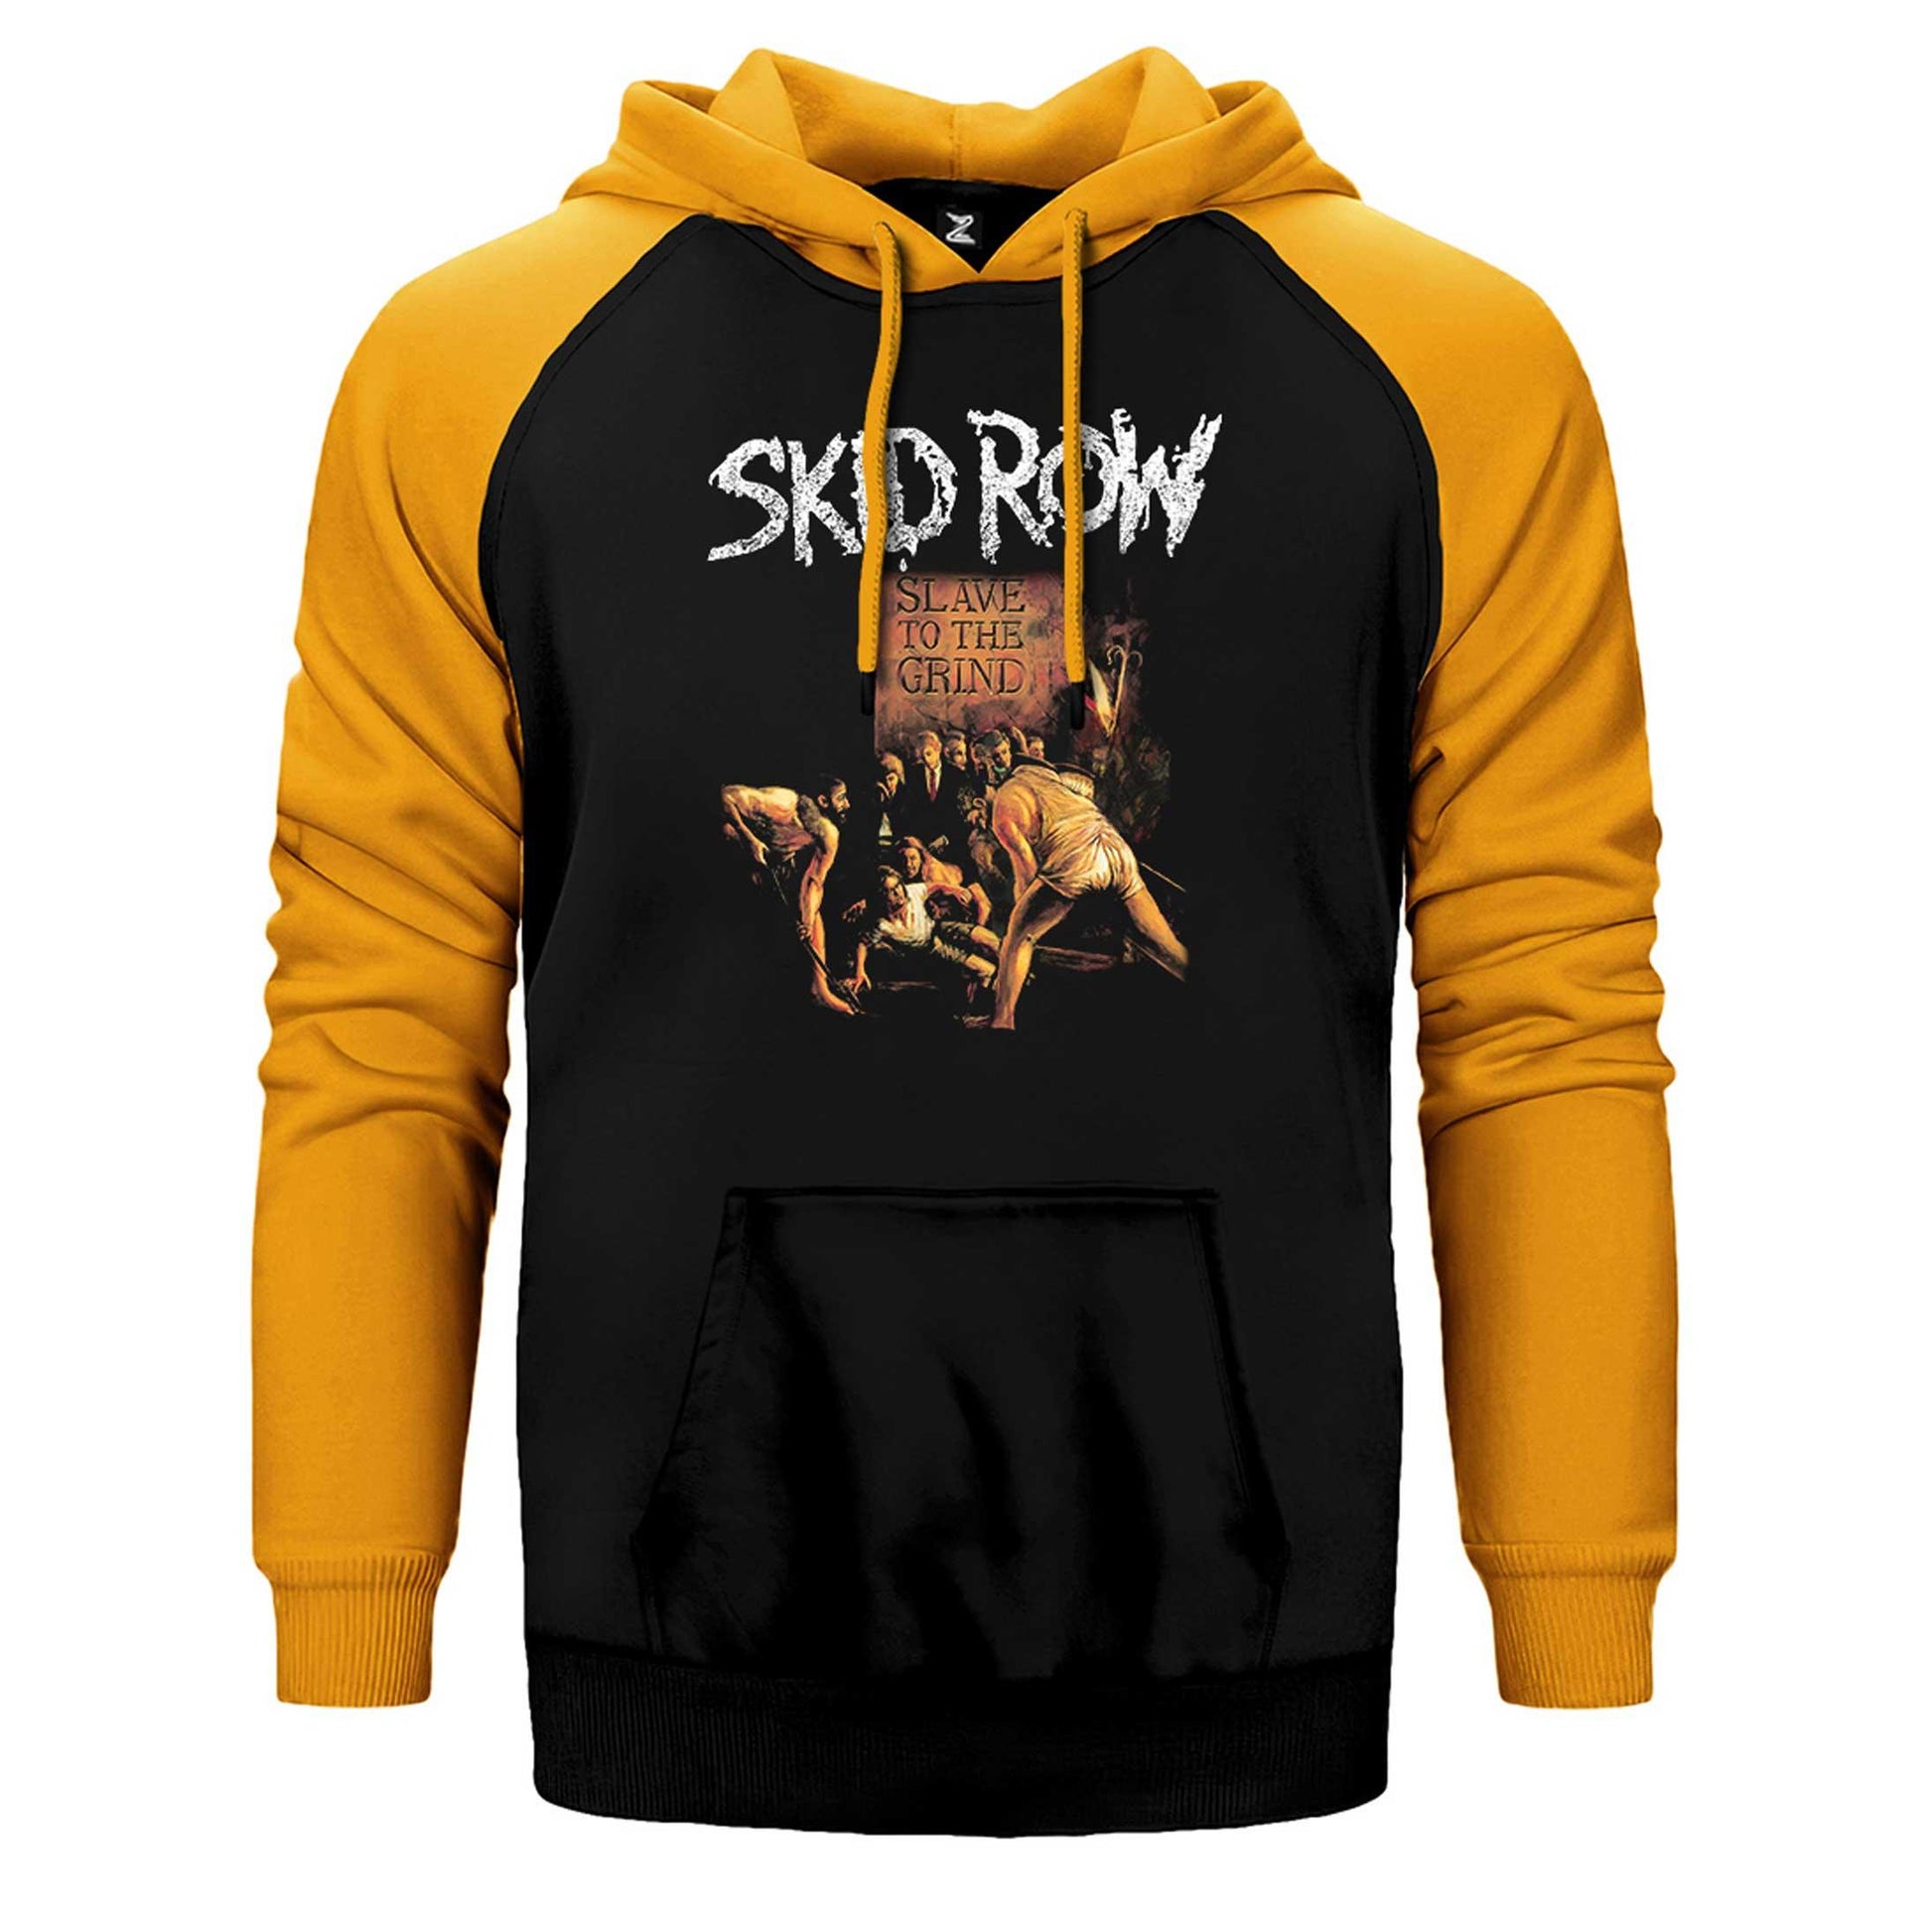 Skid Row Slave To The Grind Çift Renk Reglan Kol Sweatshirt / Hoodie - Zepplingiyim